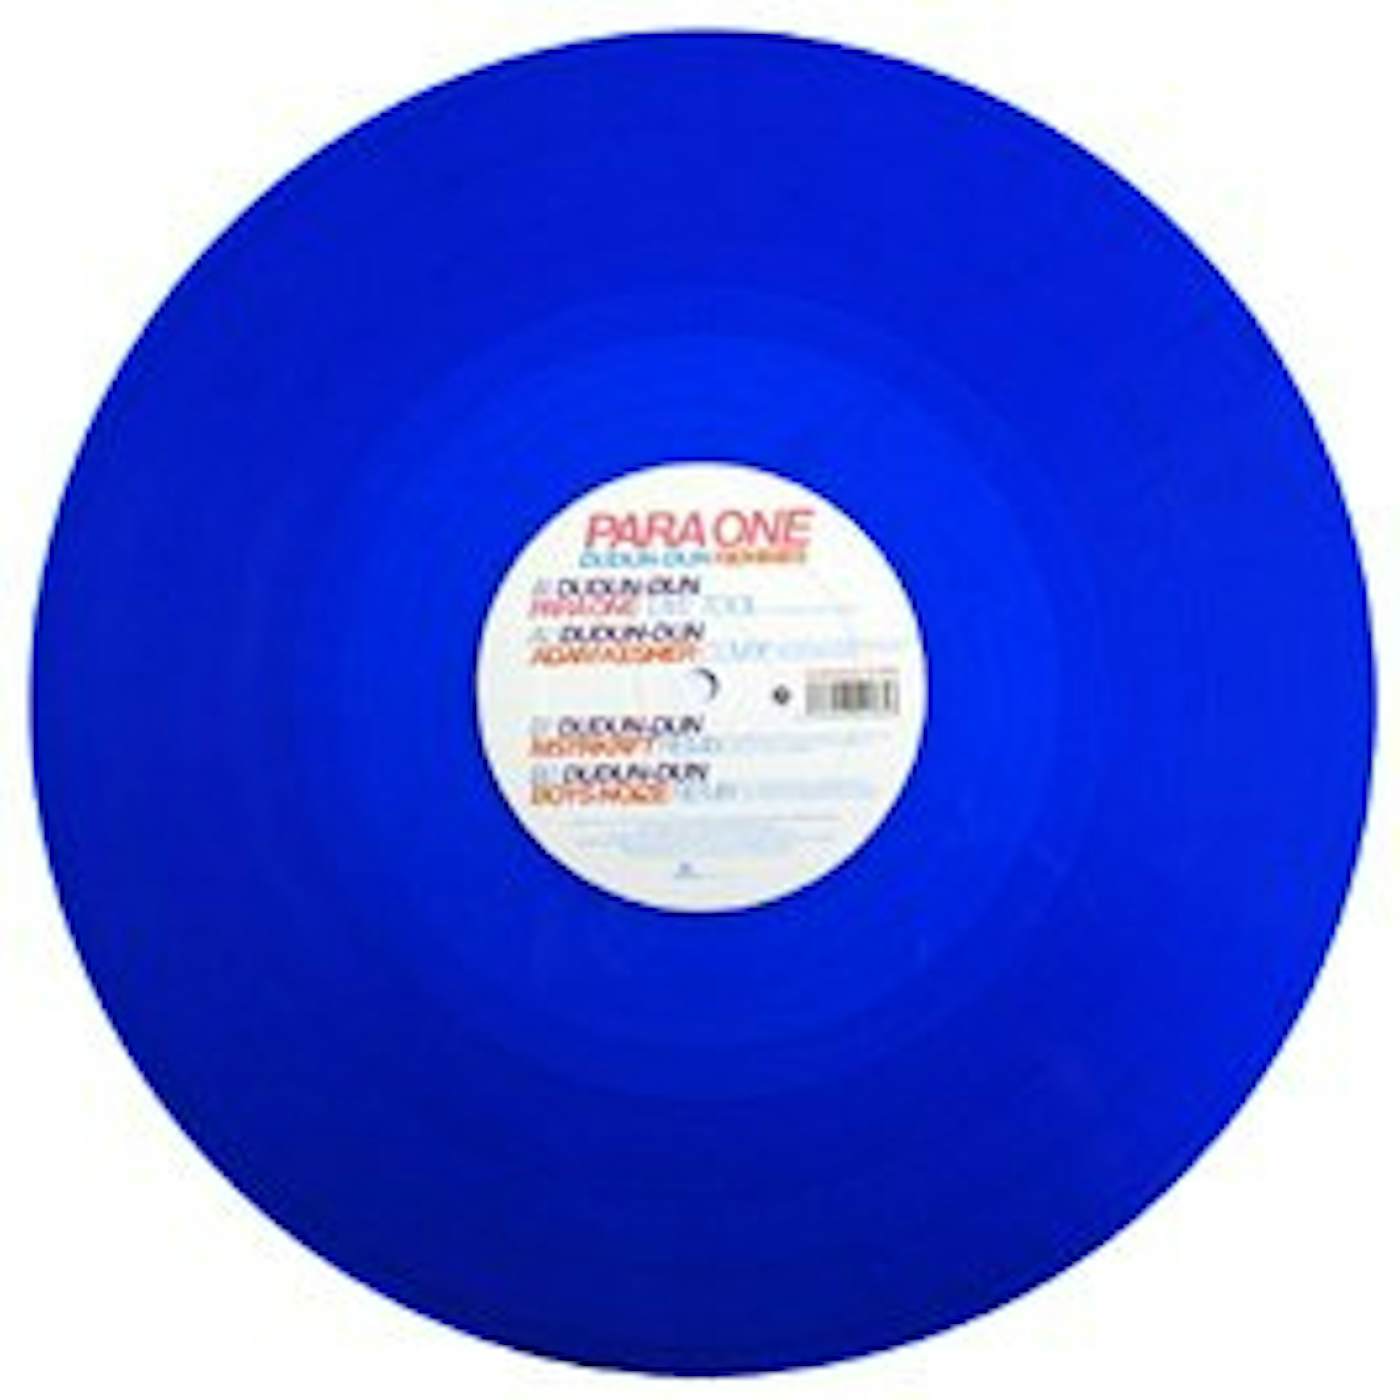 Para One DUN DUN-DUN REMIXES Vinyl Record